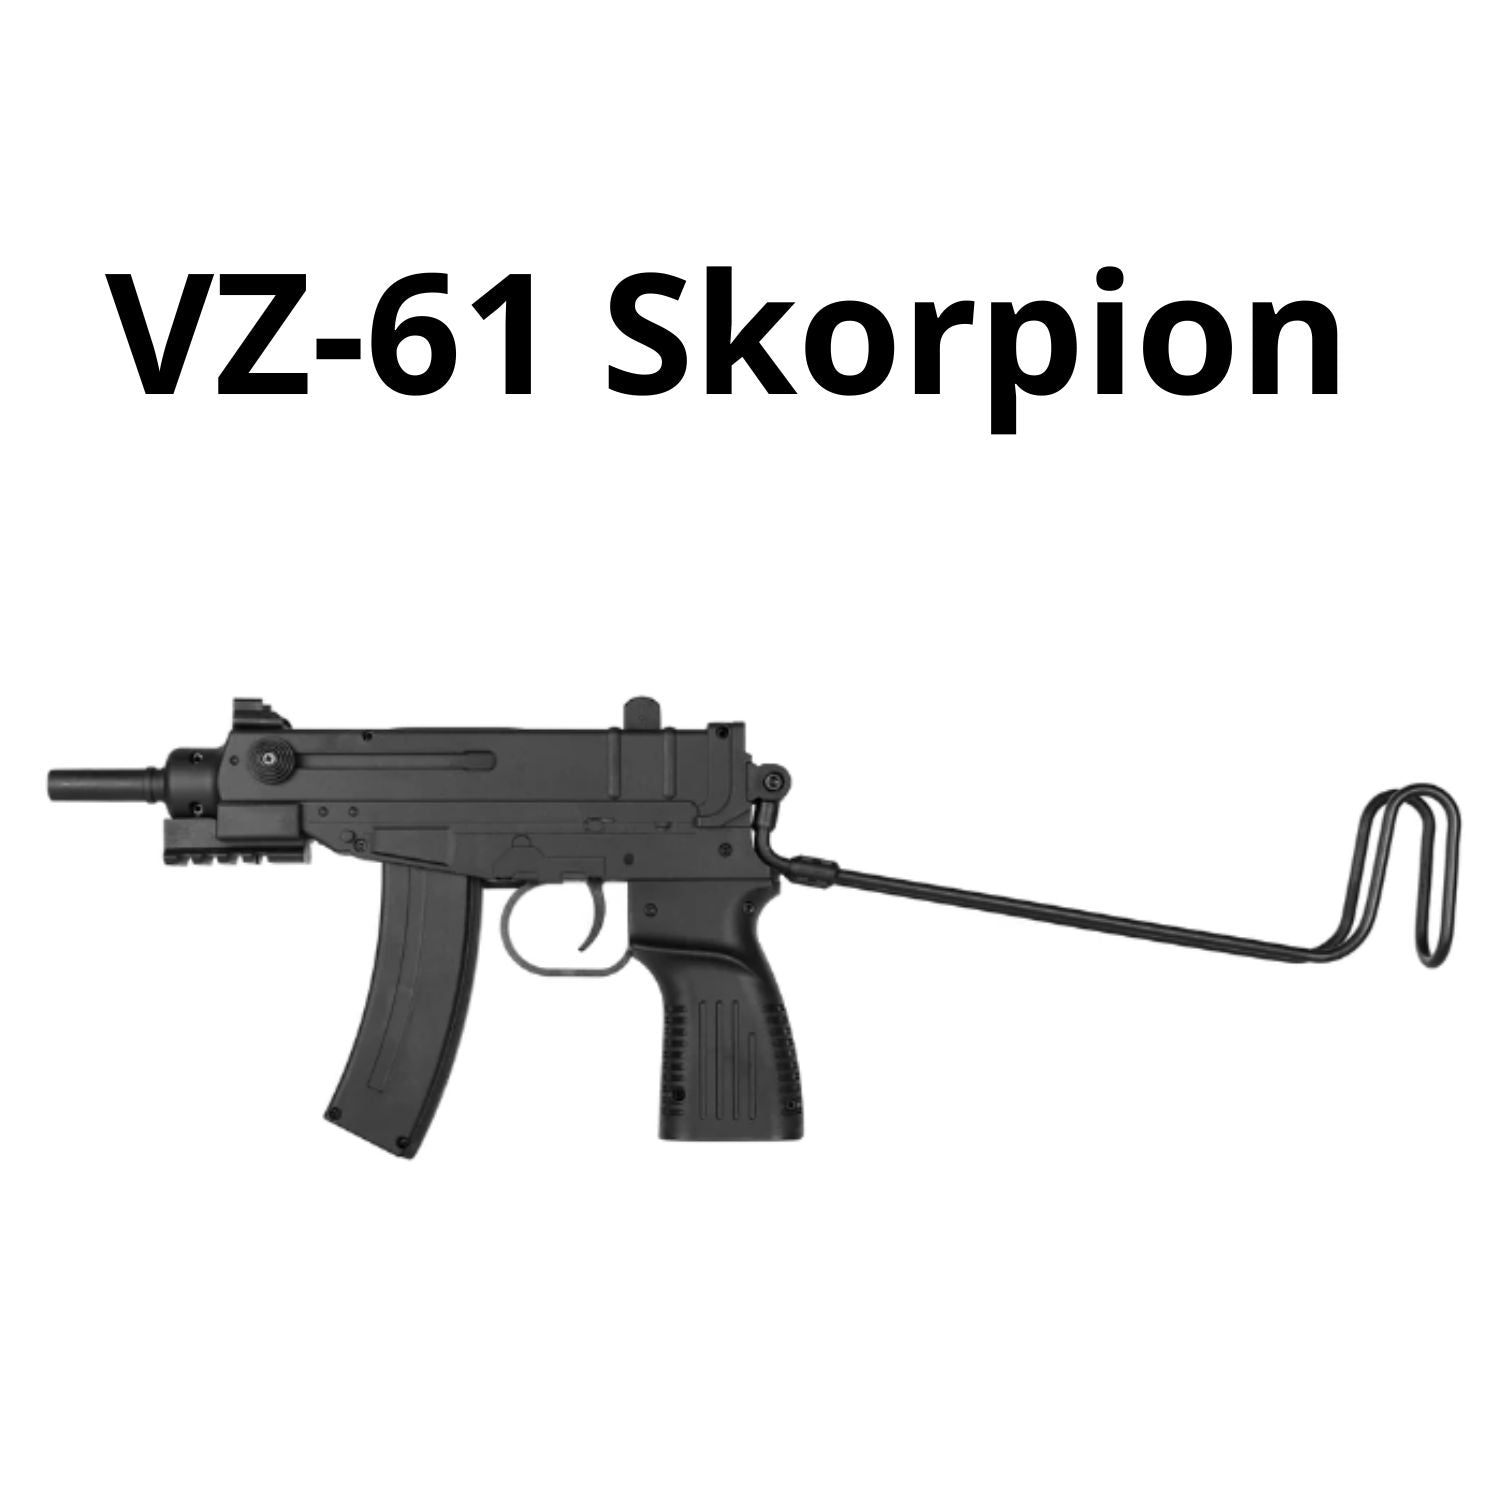 VZ-61 Skorpion Gel Fight Y6309 gel blaster